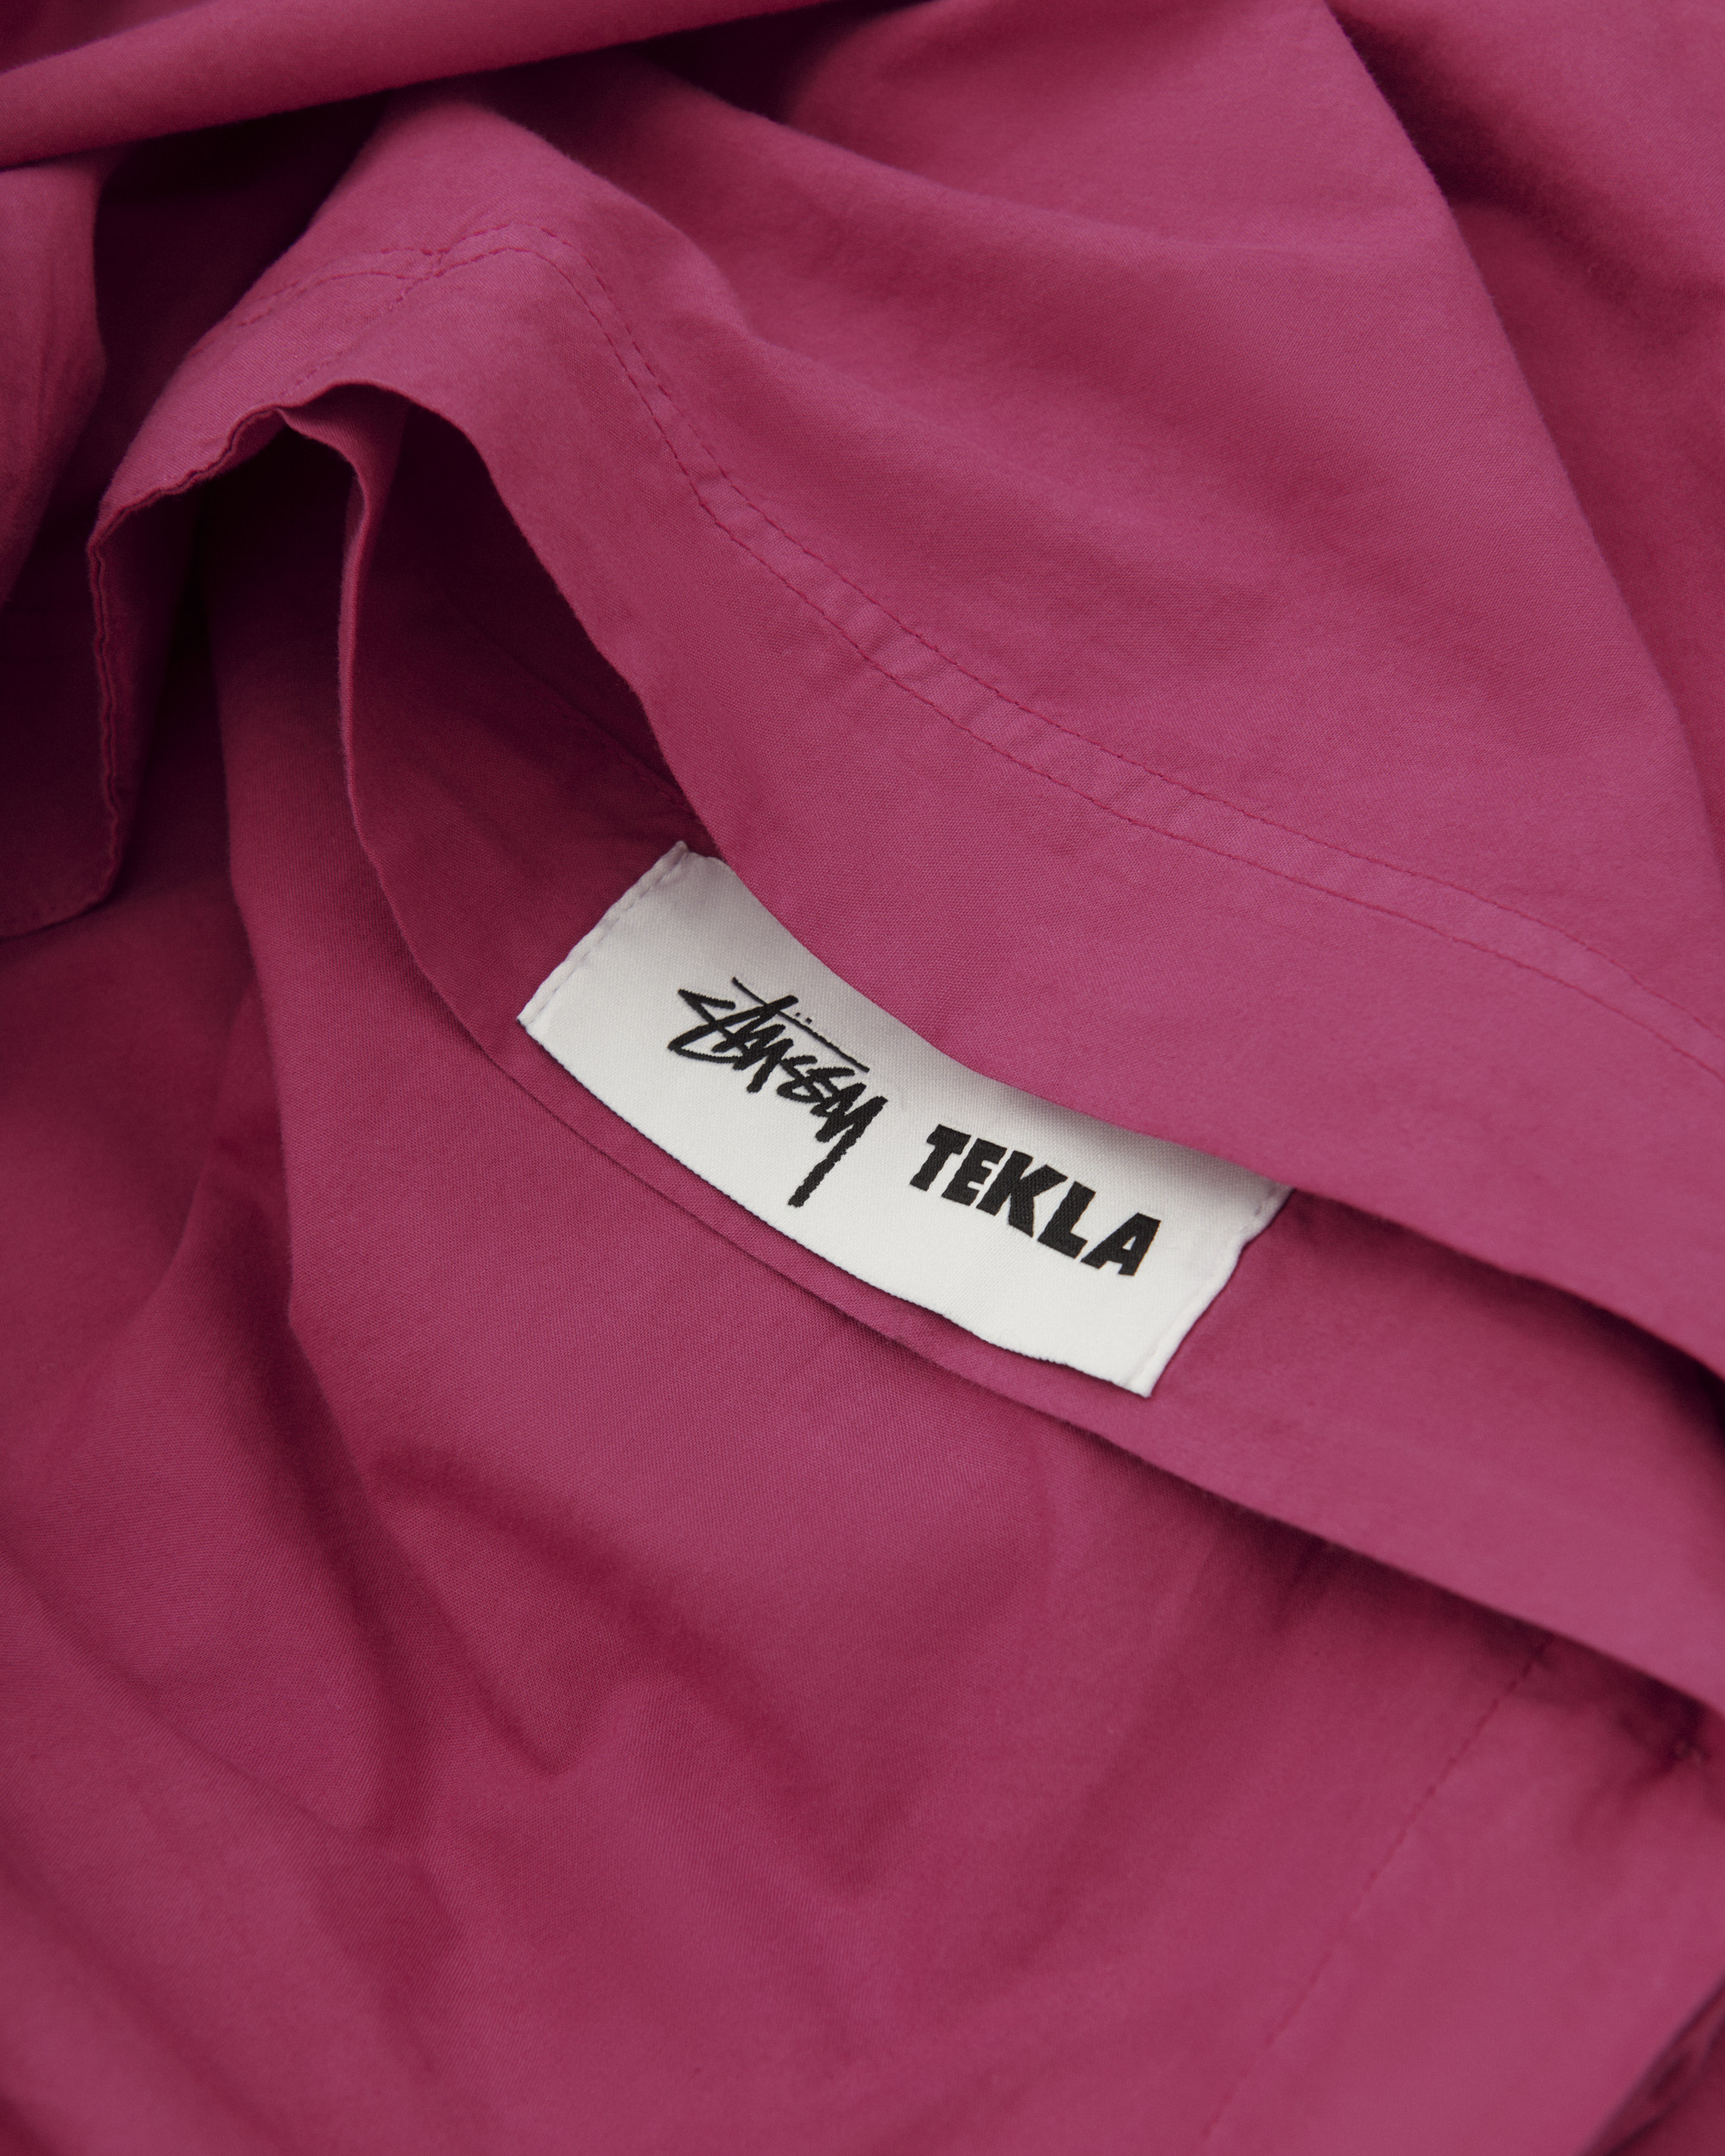 Stüssy / Tekla | Tekla Fabrics